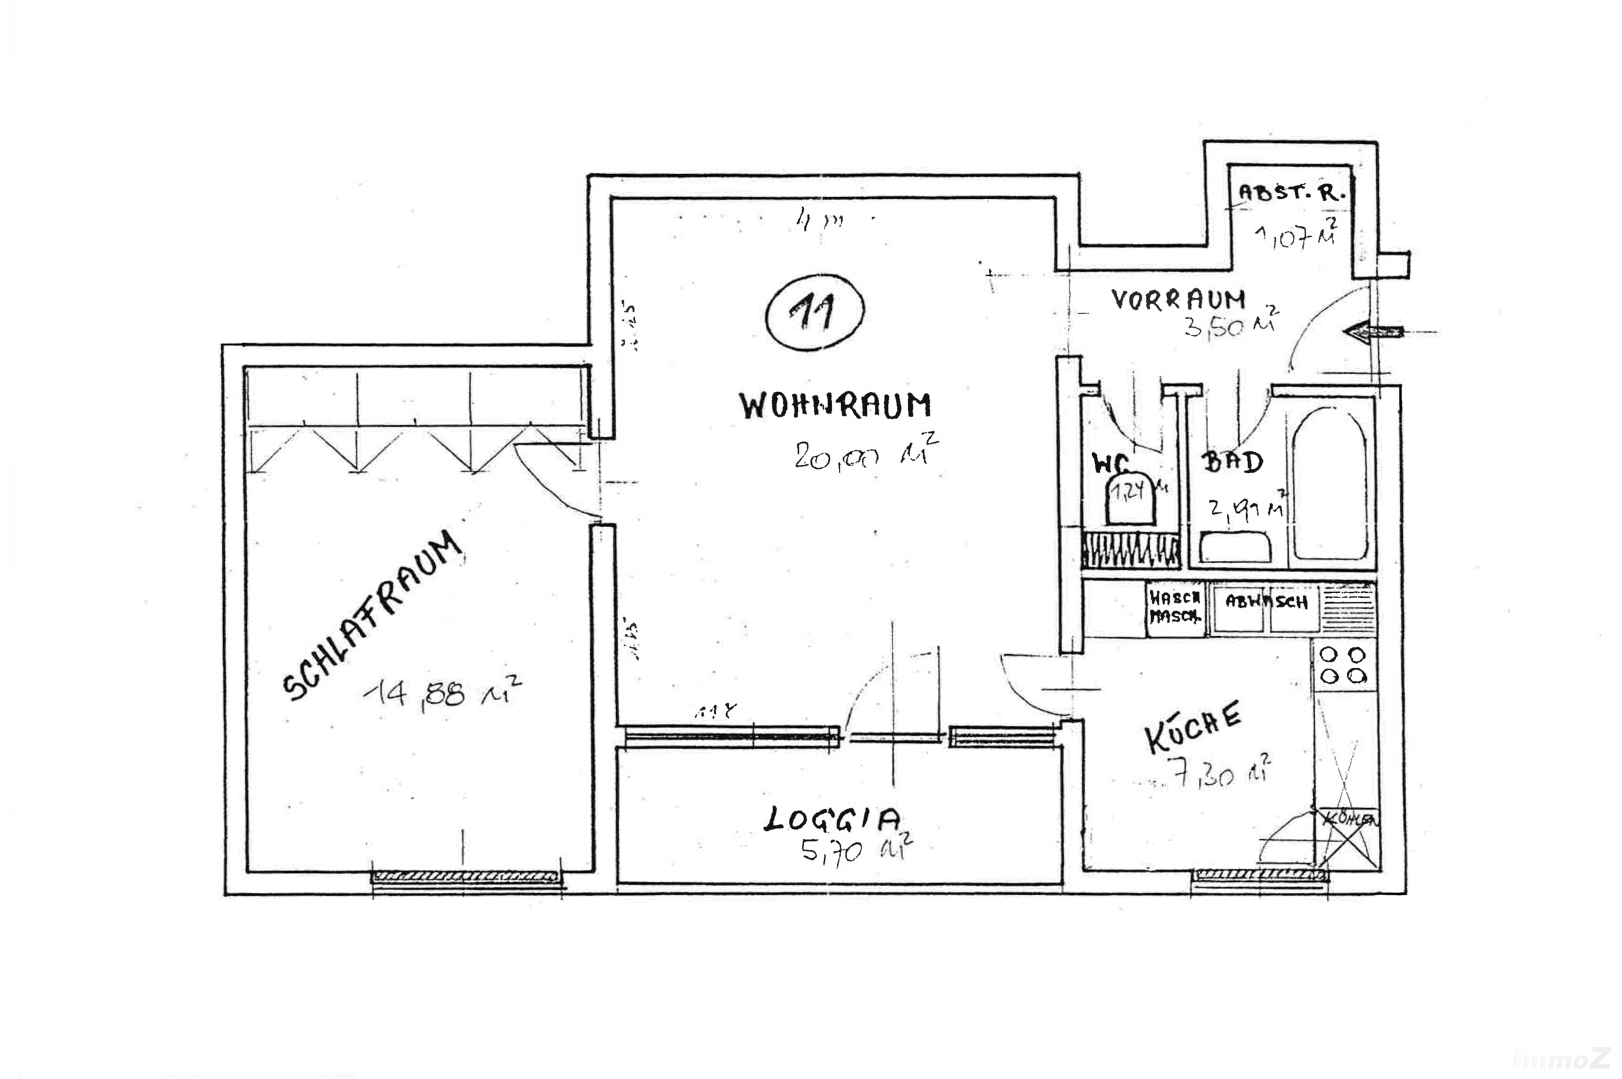 Wohnung zum Kaufen: Bauernfeldstraße 29, 8020 Graz - Grundriss